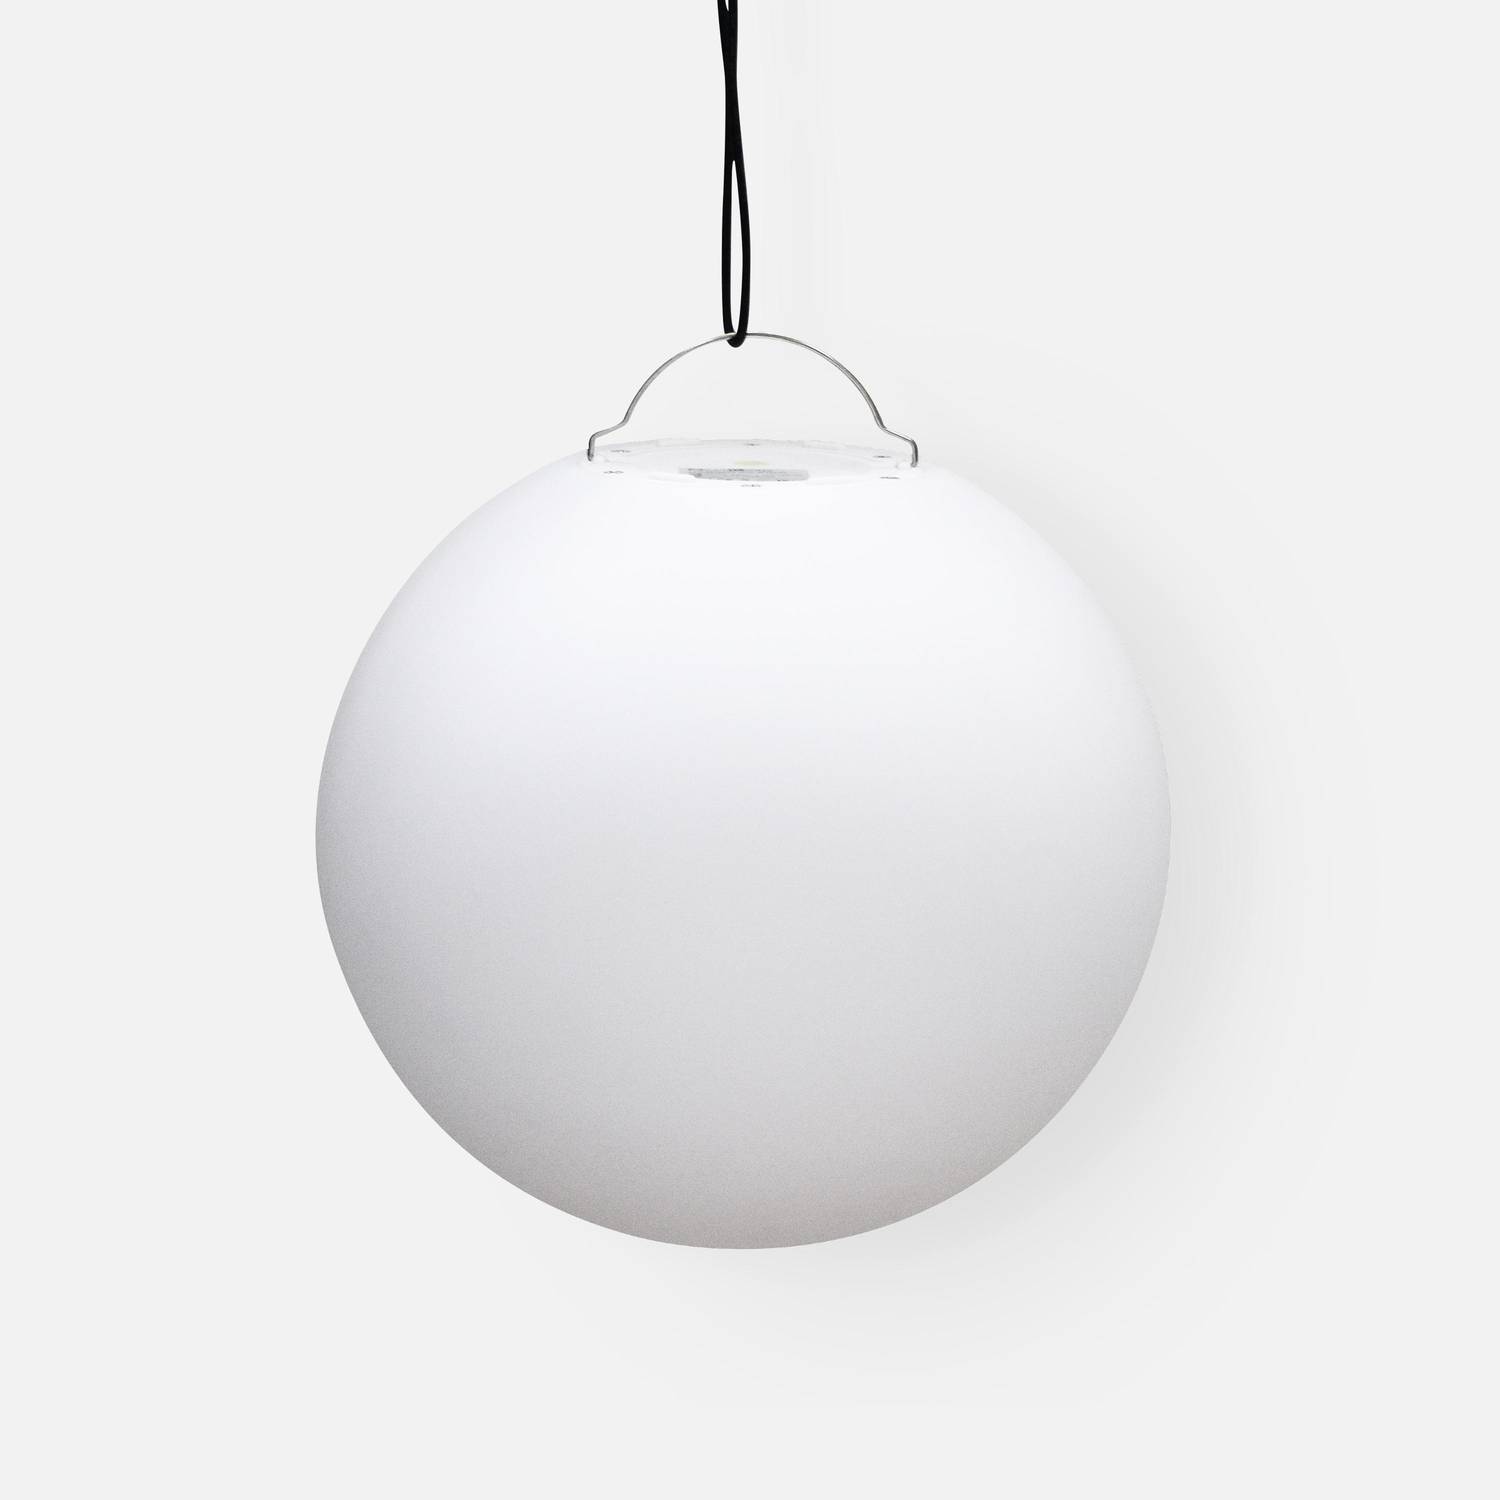 Boule LED 60cm – Sphère décorative lumineuse, Ø60cm, blanc chaud, commande à distance Photo4